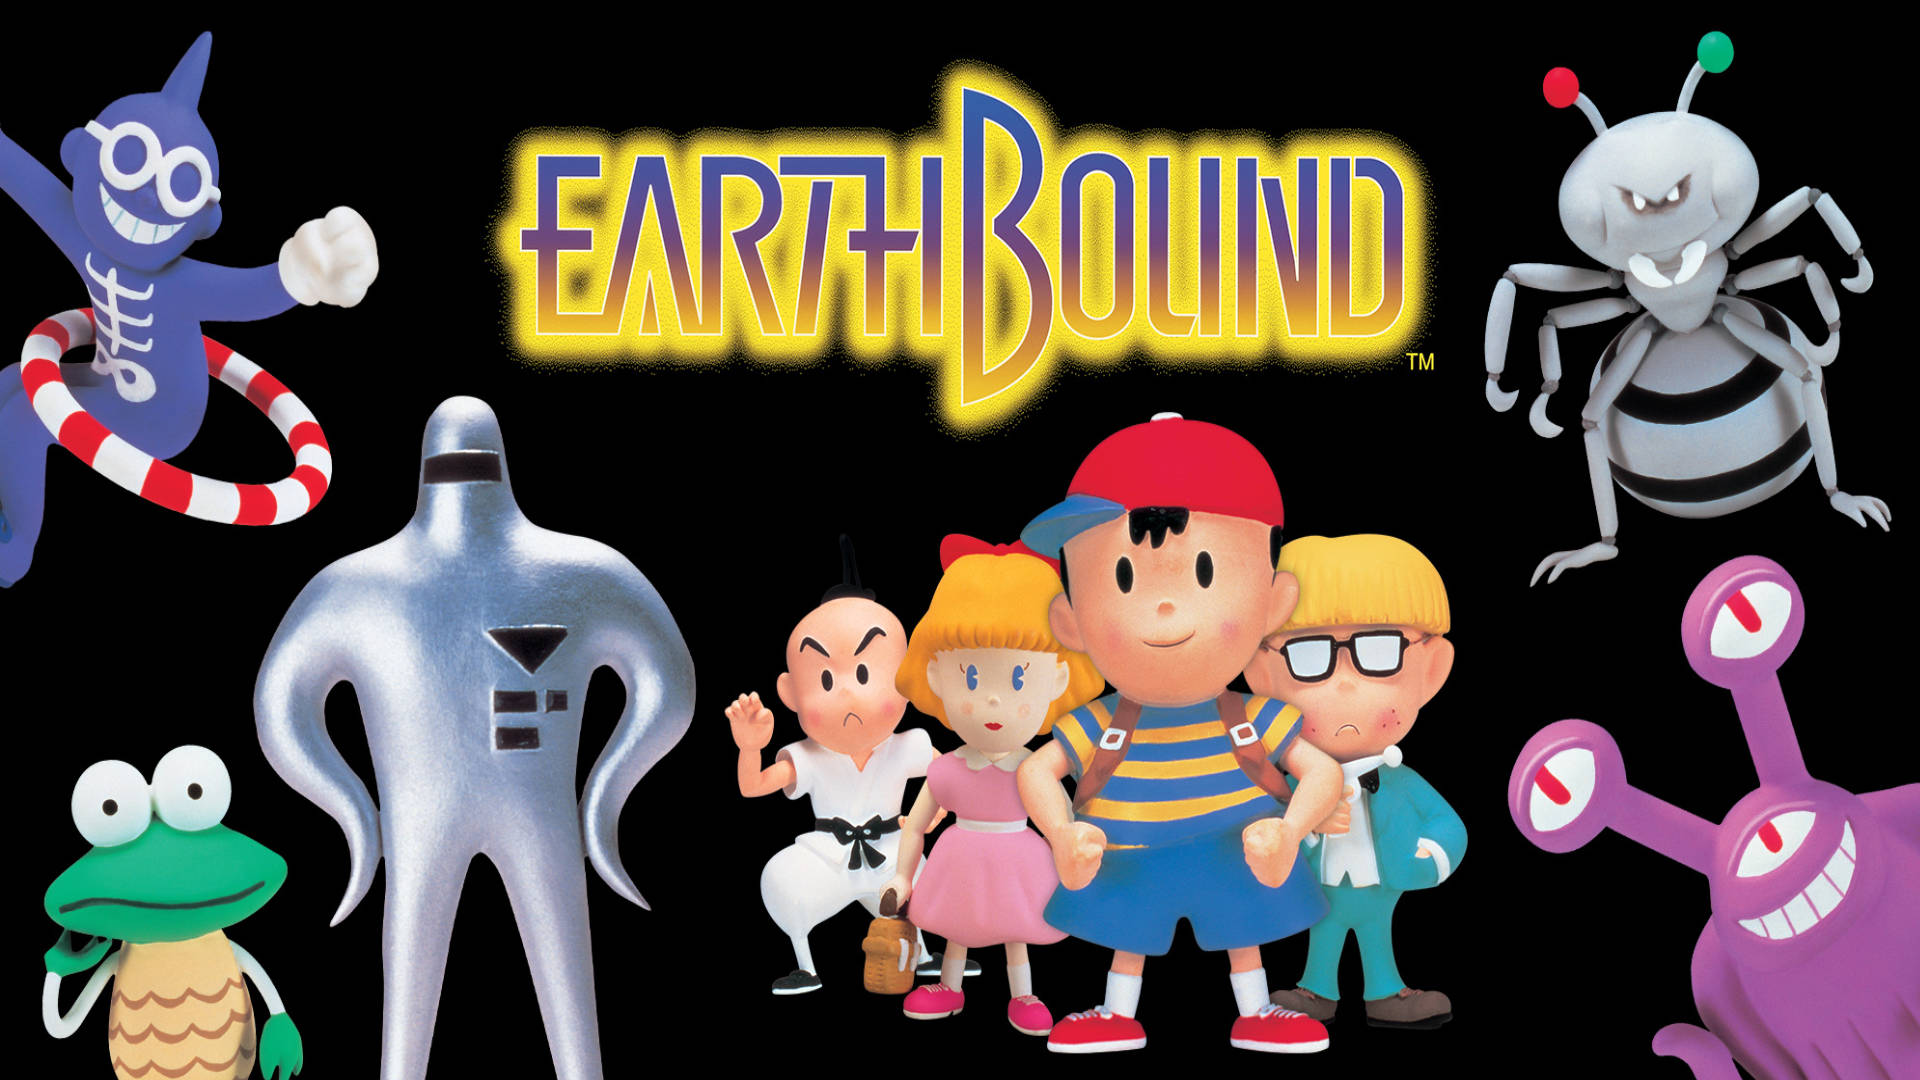 Earthbound-Community aufgepasst! Neue Doku ab jetzt erhältlich